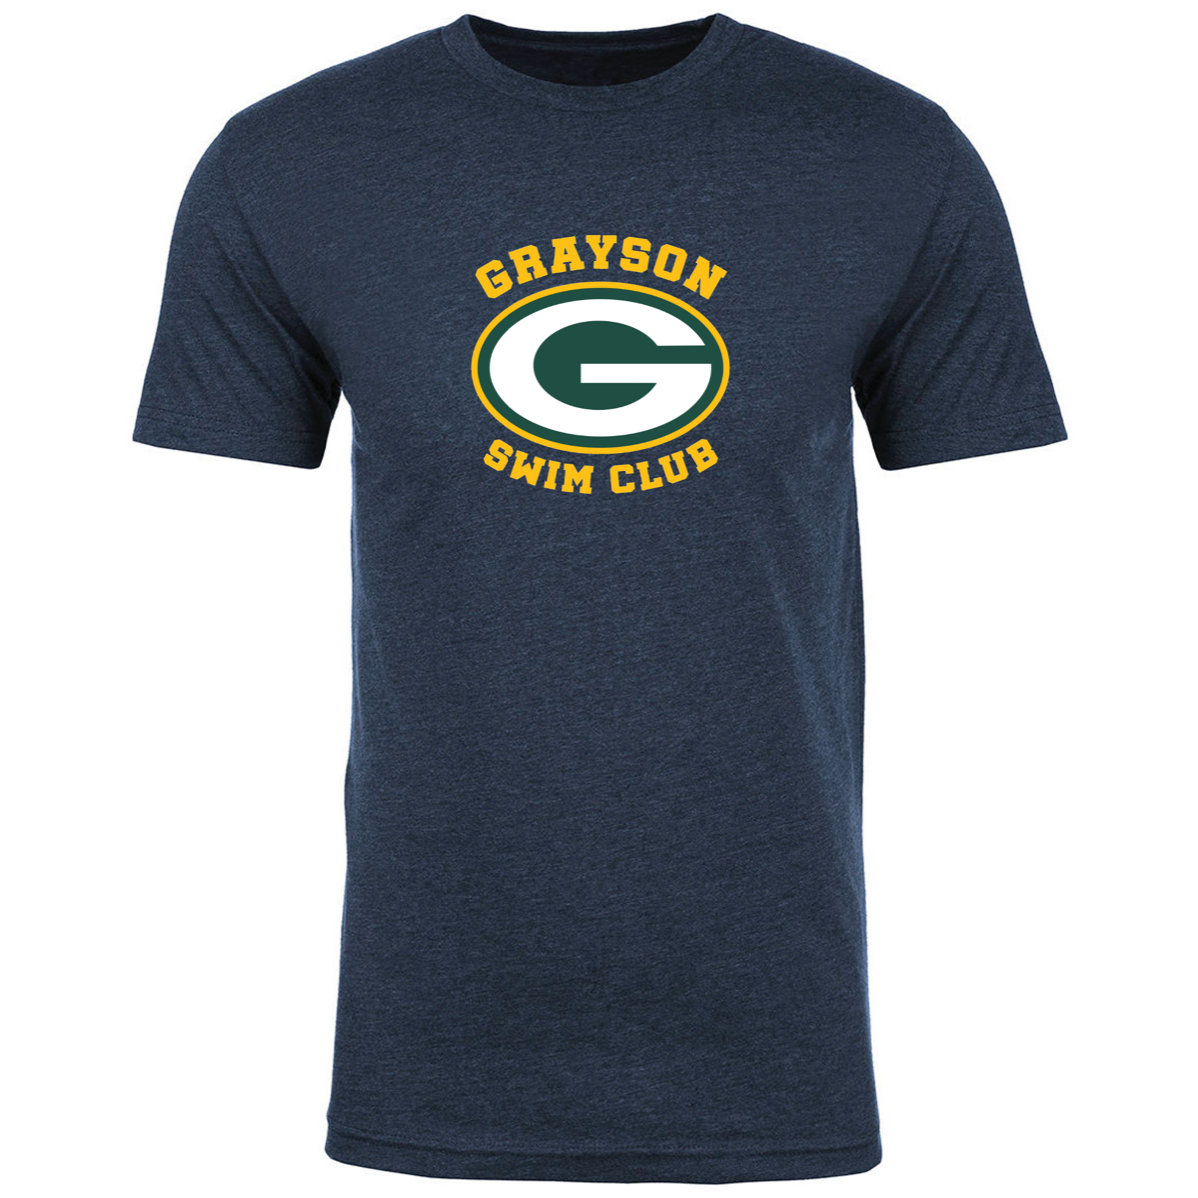 Team T-Shirt #1 - Grayson Swim Club